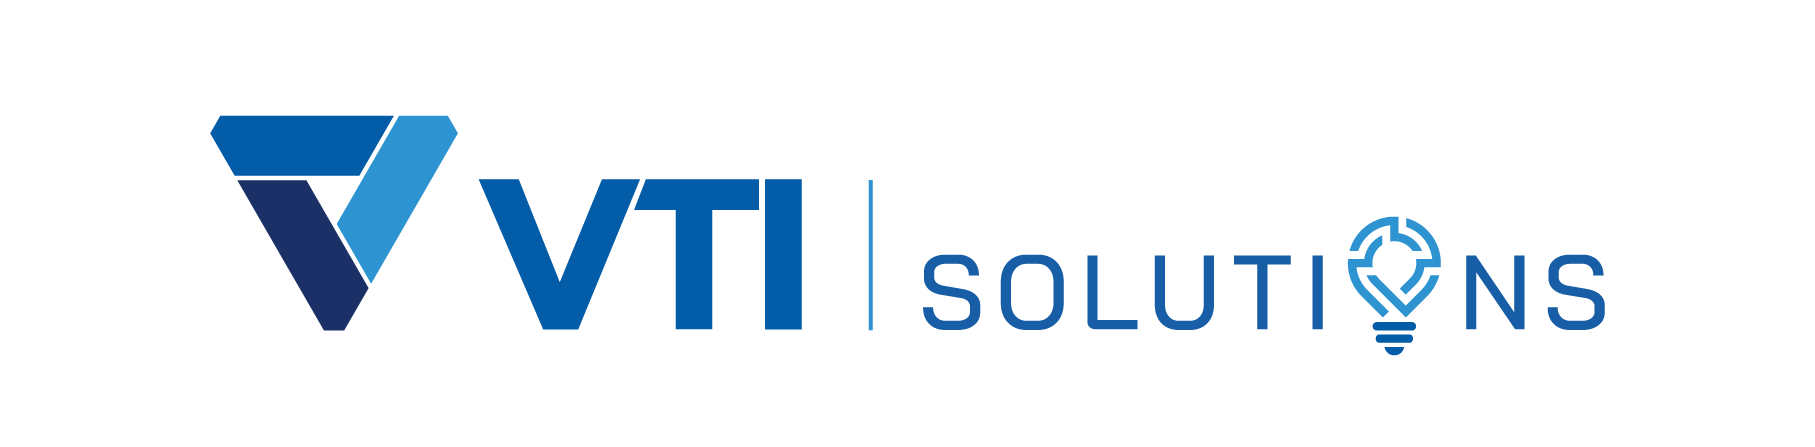 Phần mềm quản lý xuất nhập kho VTI Solutions